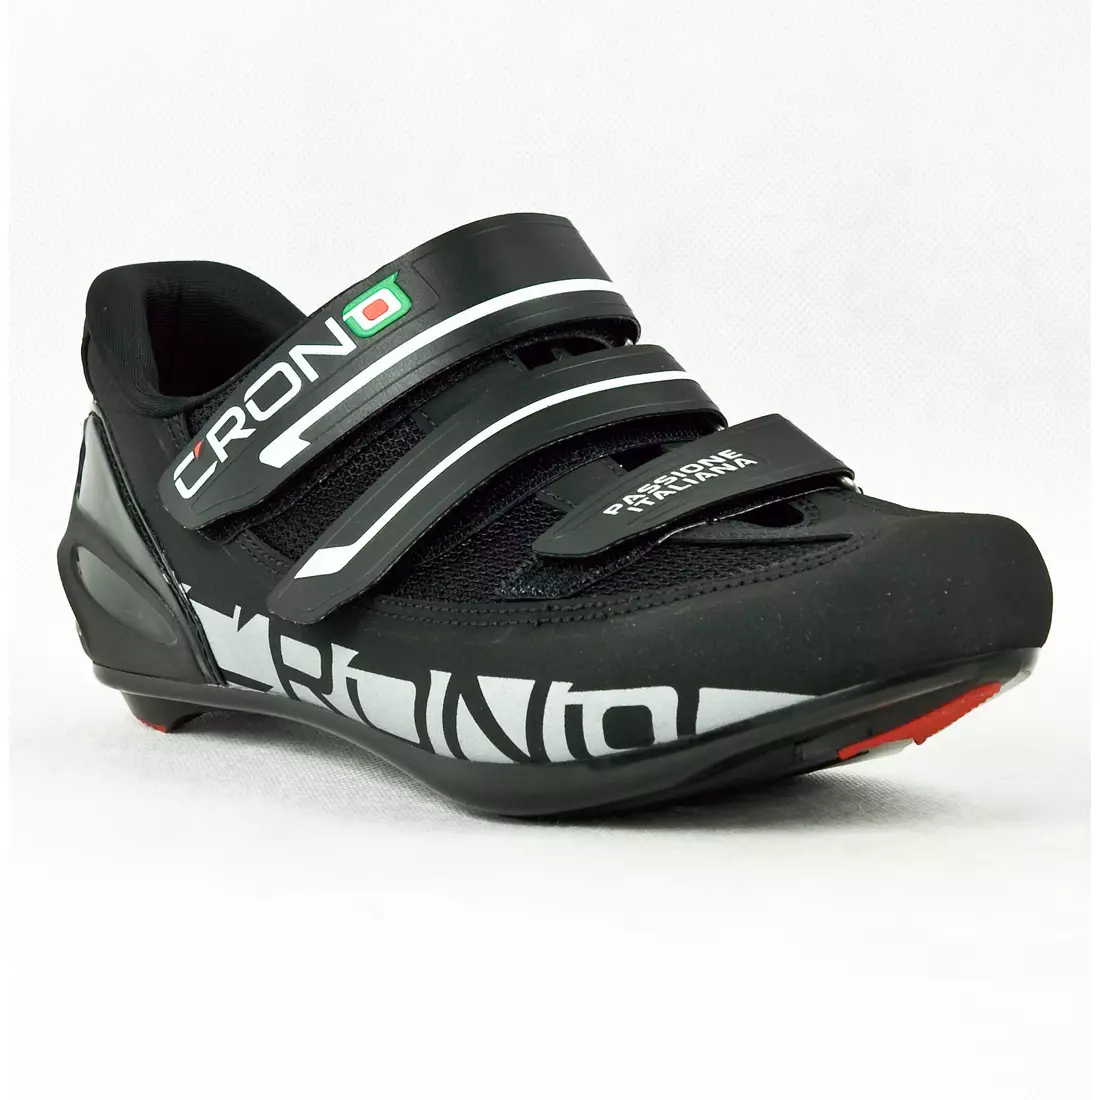 CRONO PERLA NYLON - országúti kerékpáros cipő - szín: fekete